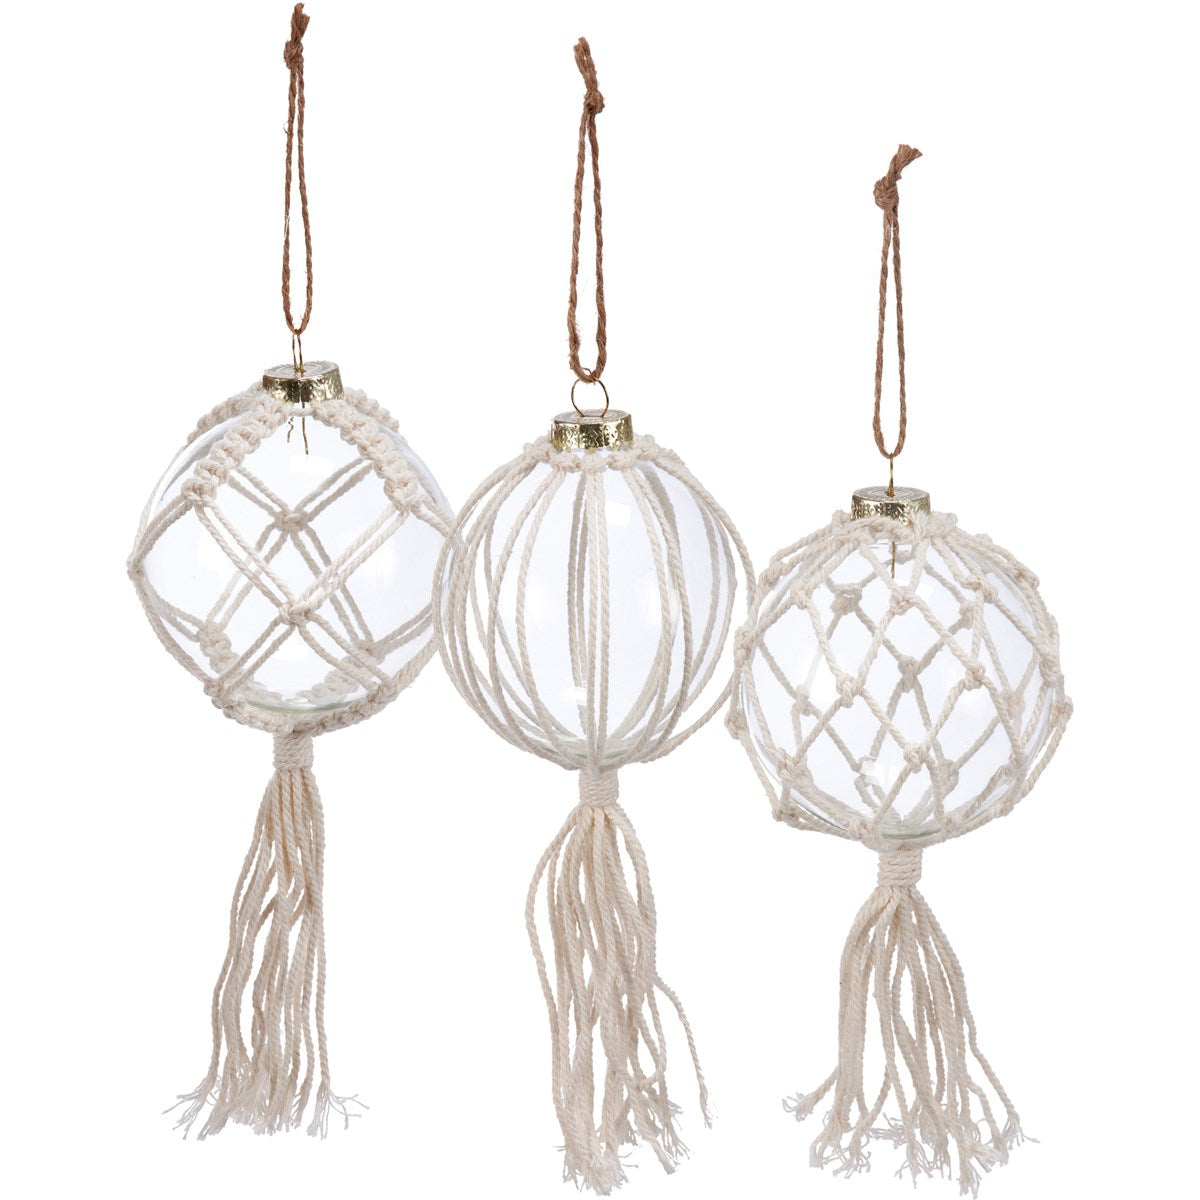 Macrame Balls - Ornament Set of 3